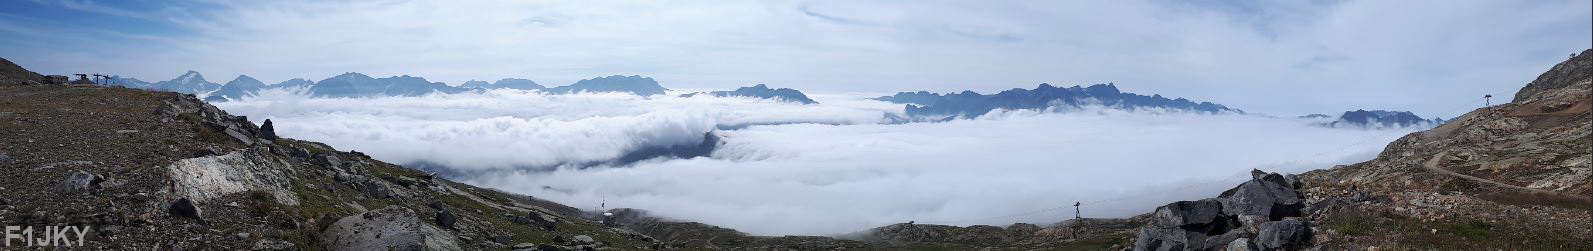 Massif de l'Oisans et Massif de Belledonne vue depuis l'Alpe d'Huez à 2700m Alt (d.38)